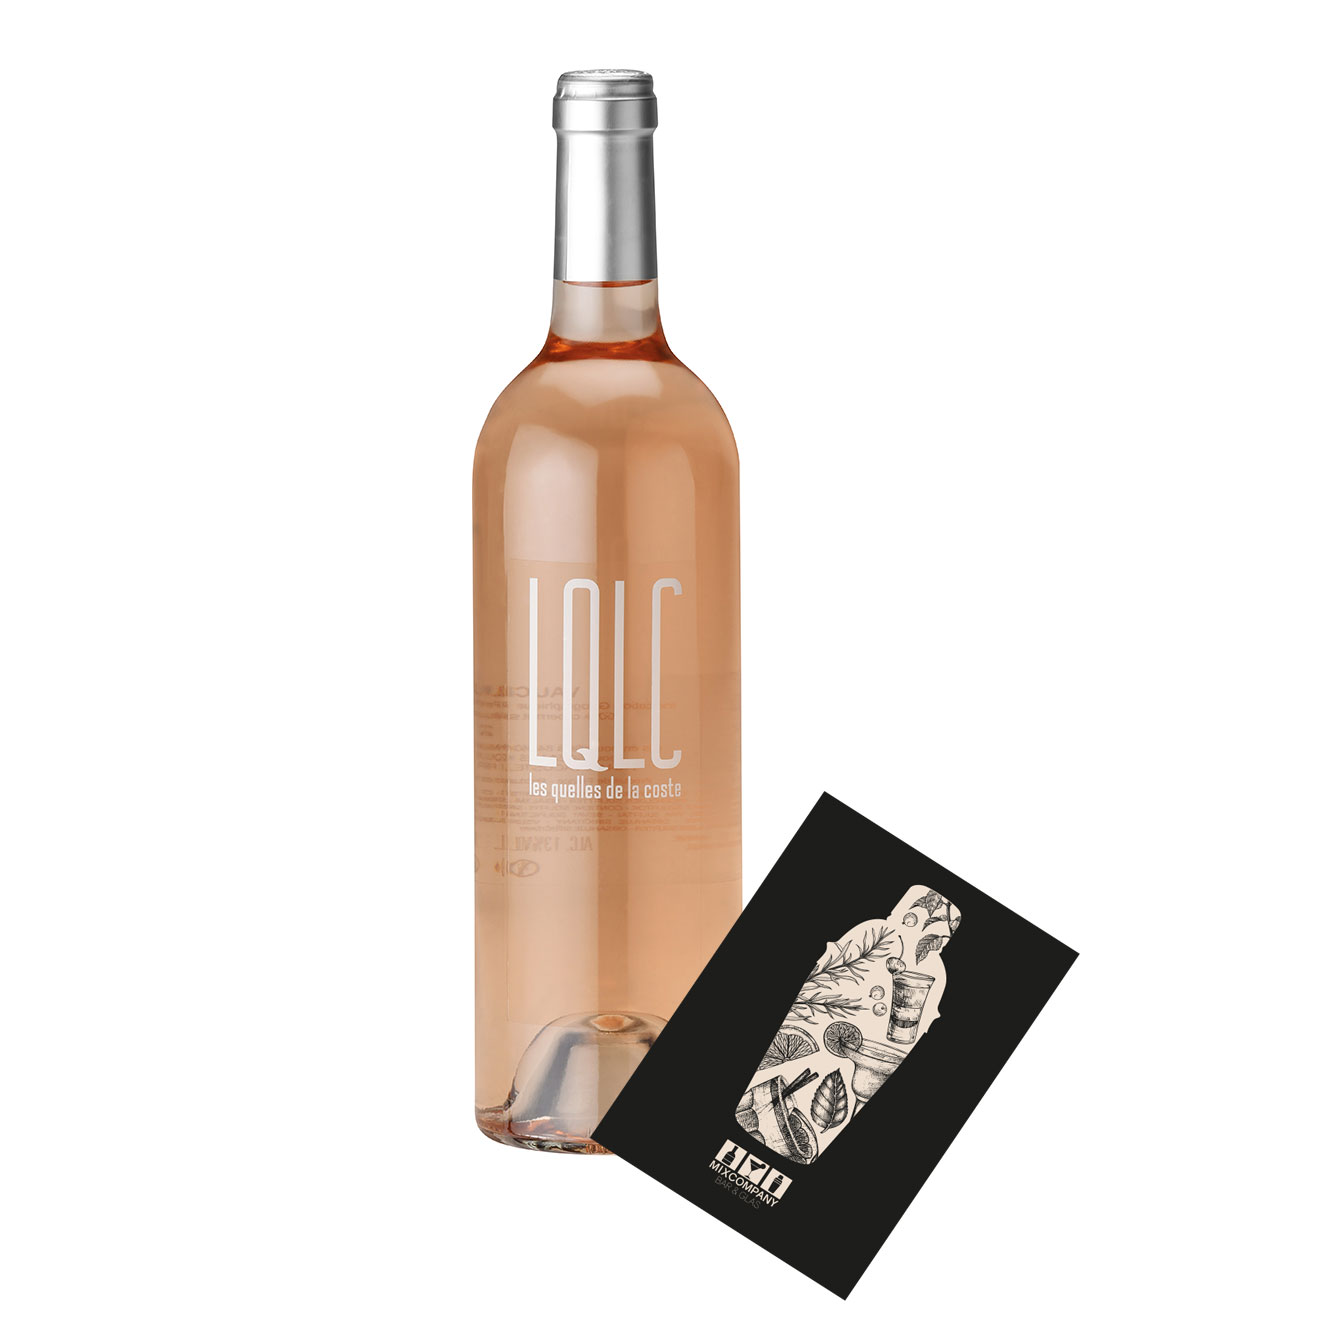 LQLC Rose Wein 0,75L (13% Vol) Les quelles de la coste rose von John Malkovich Frankreich Vaucluse trocken- [Enthält Sulfite]